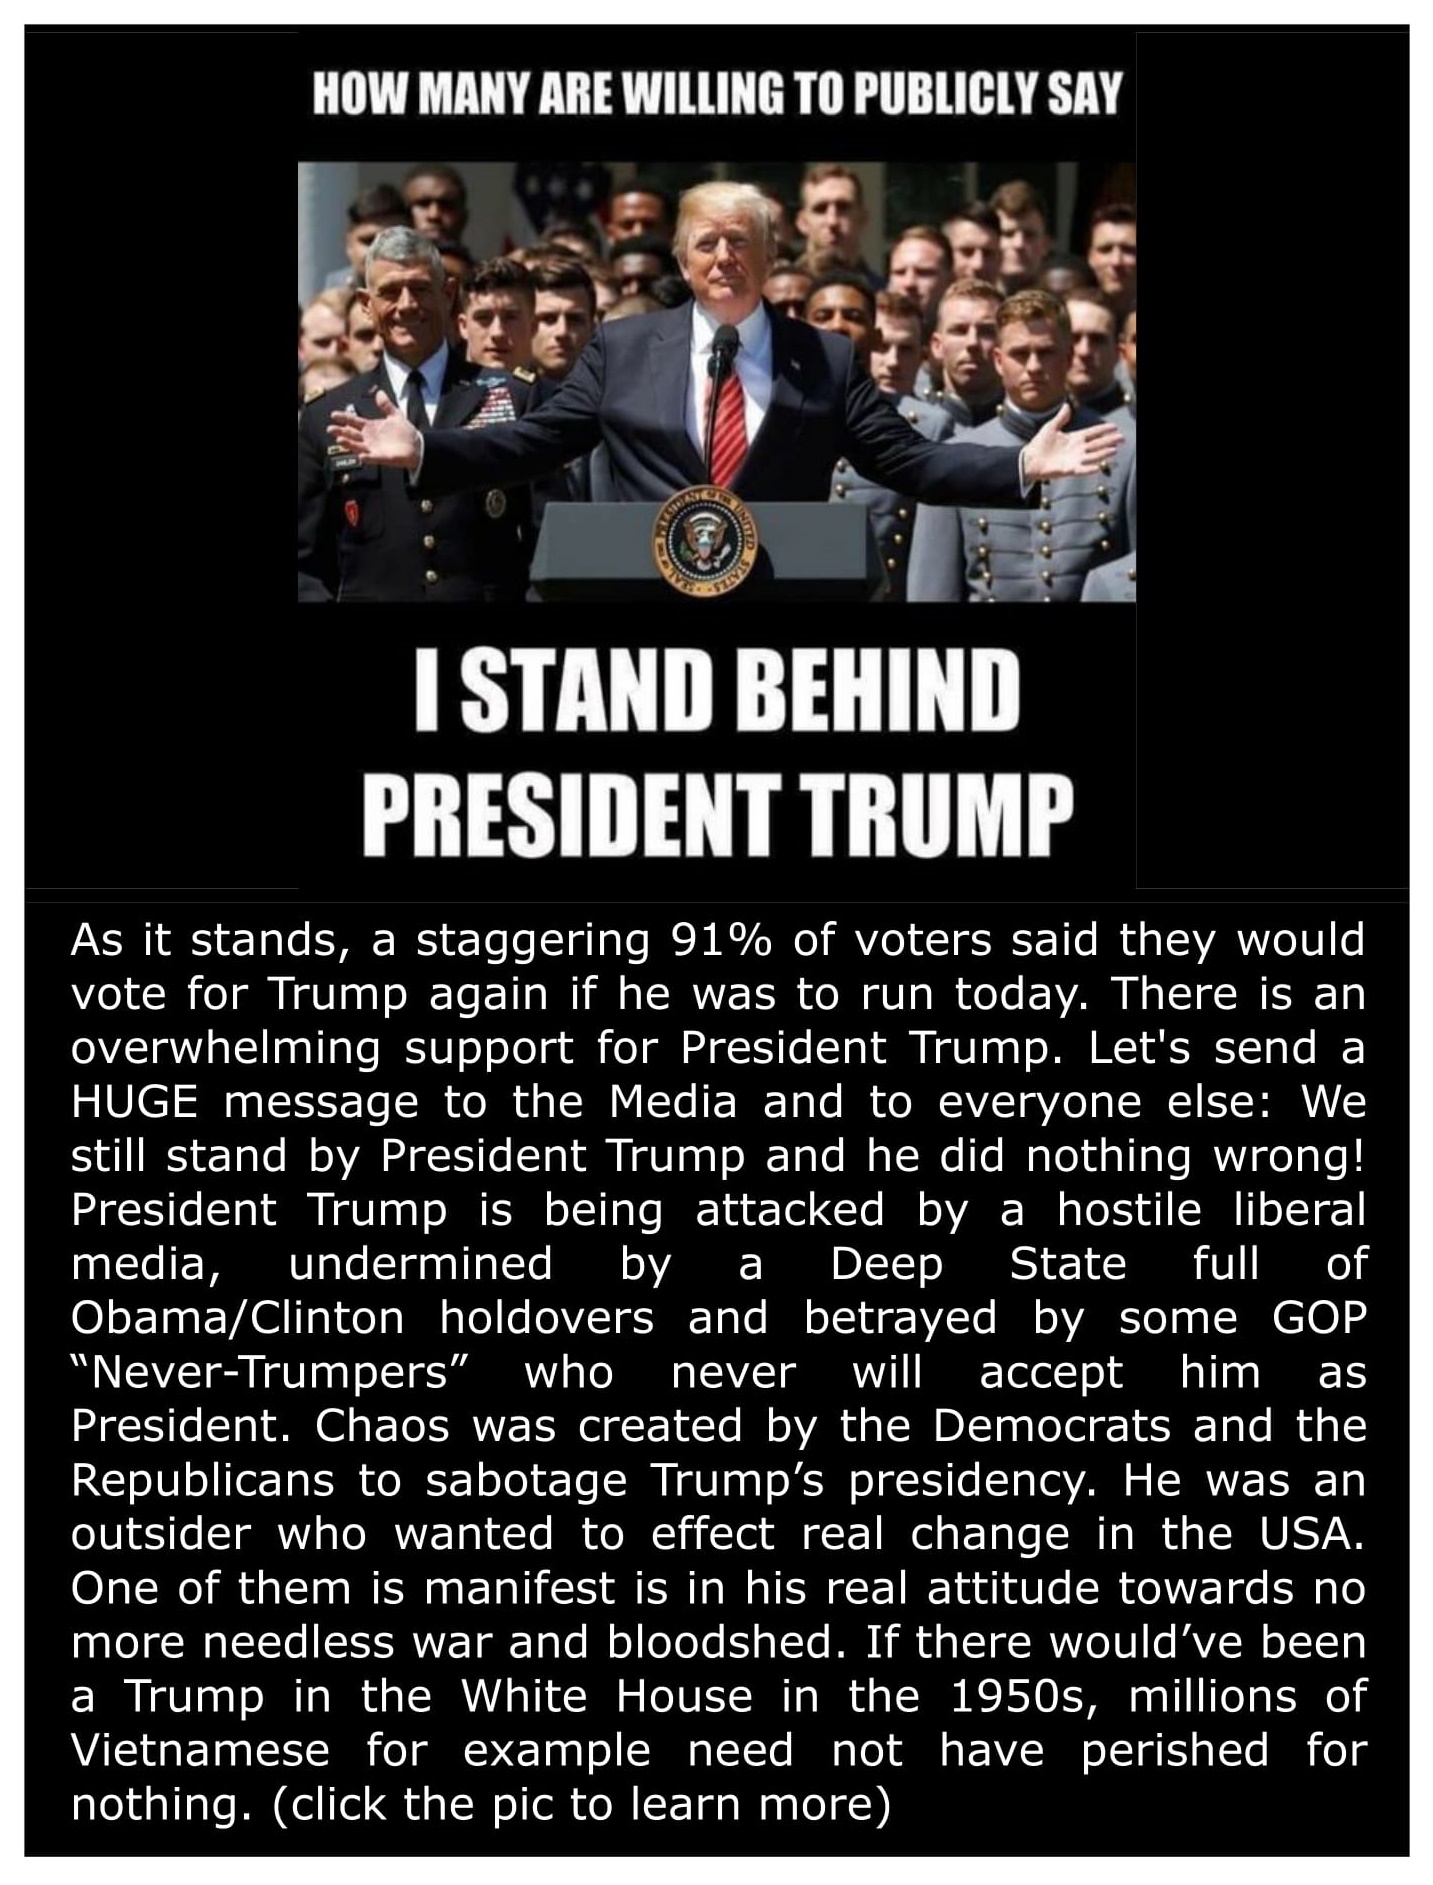 We Stand Behind Pres. Trump